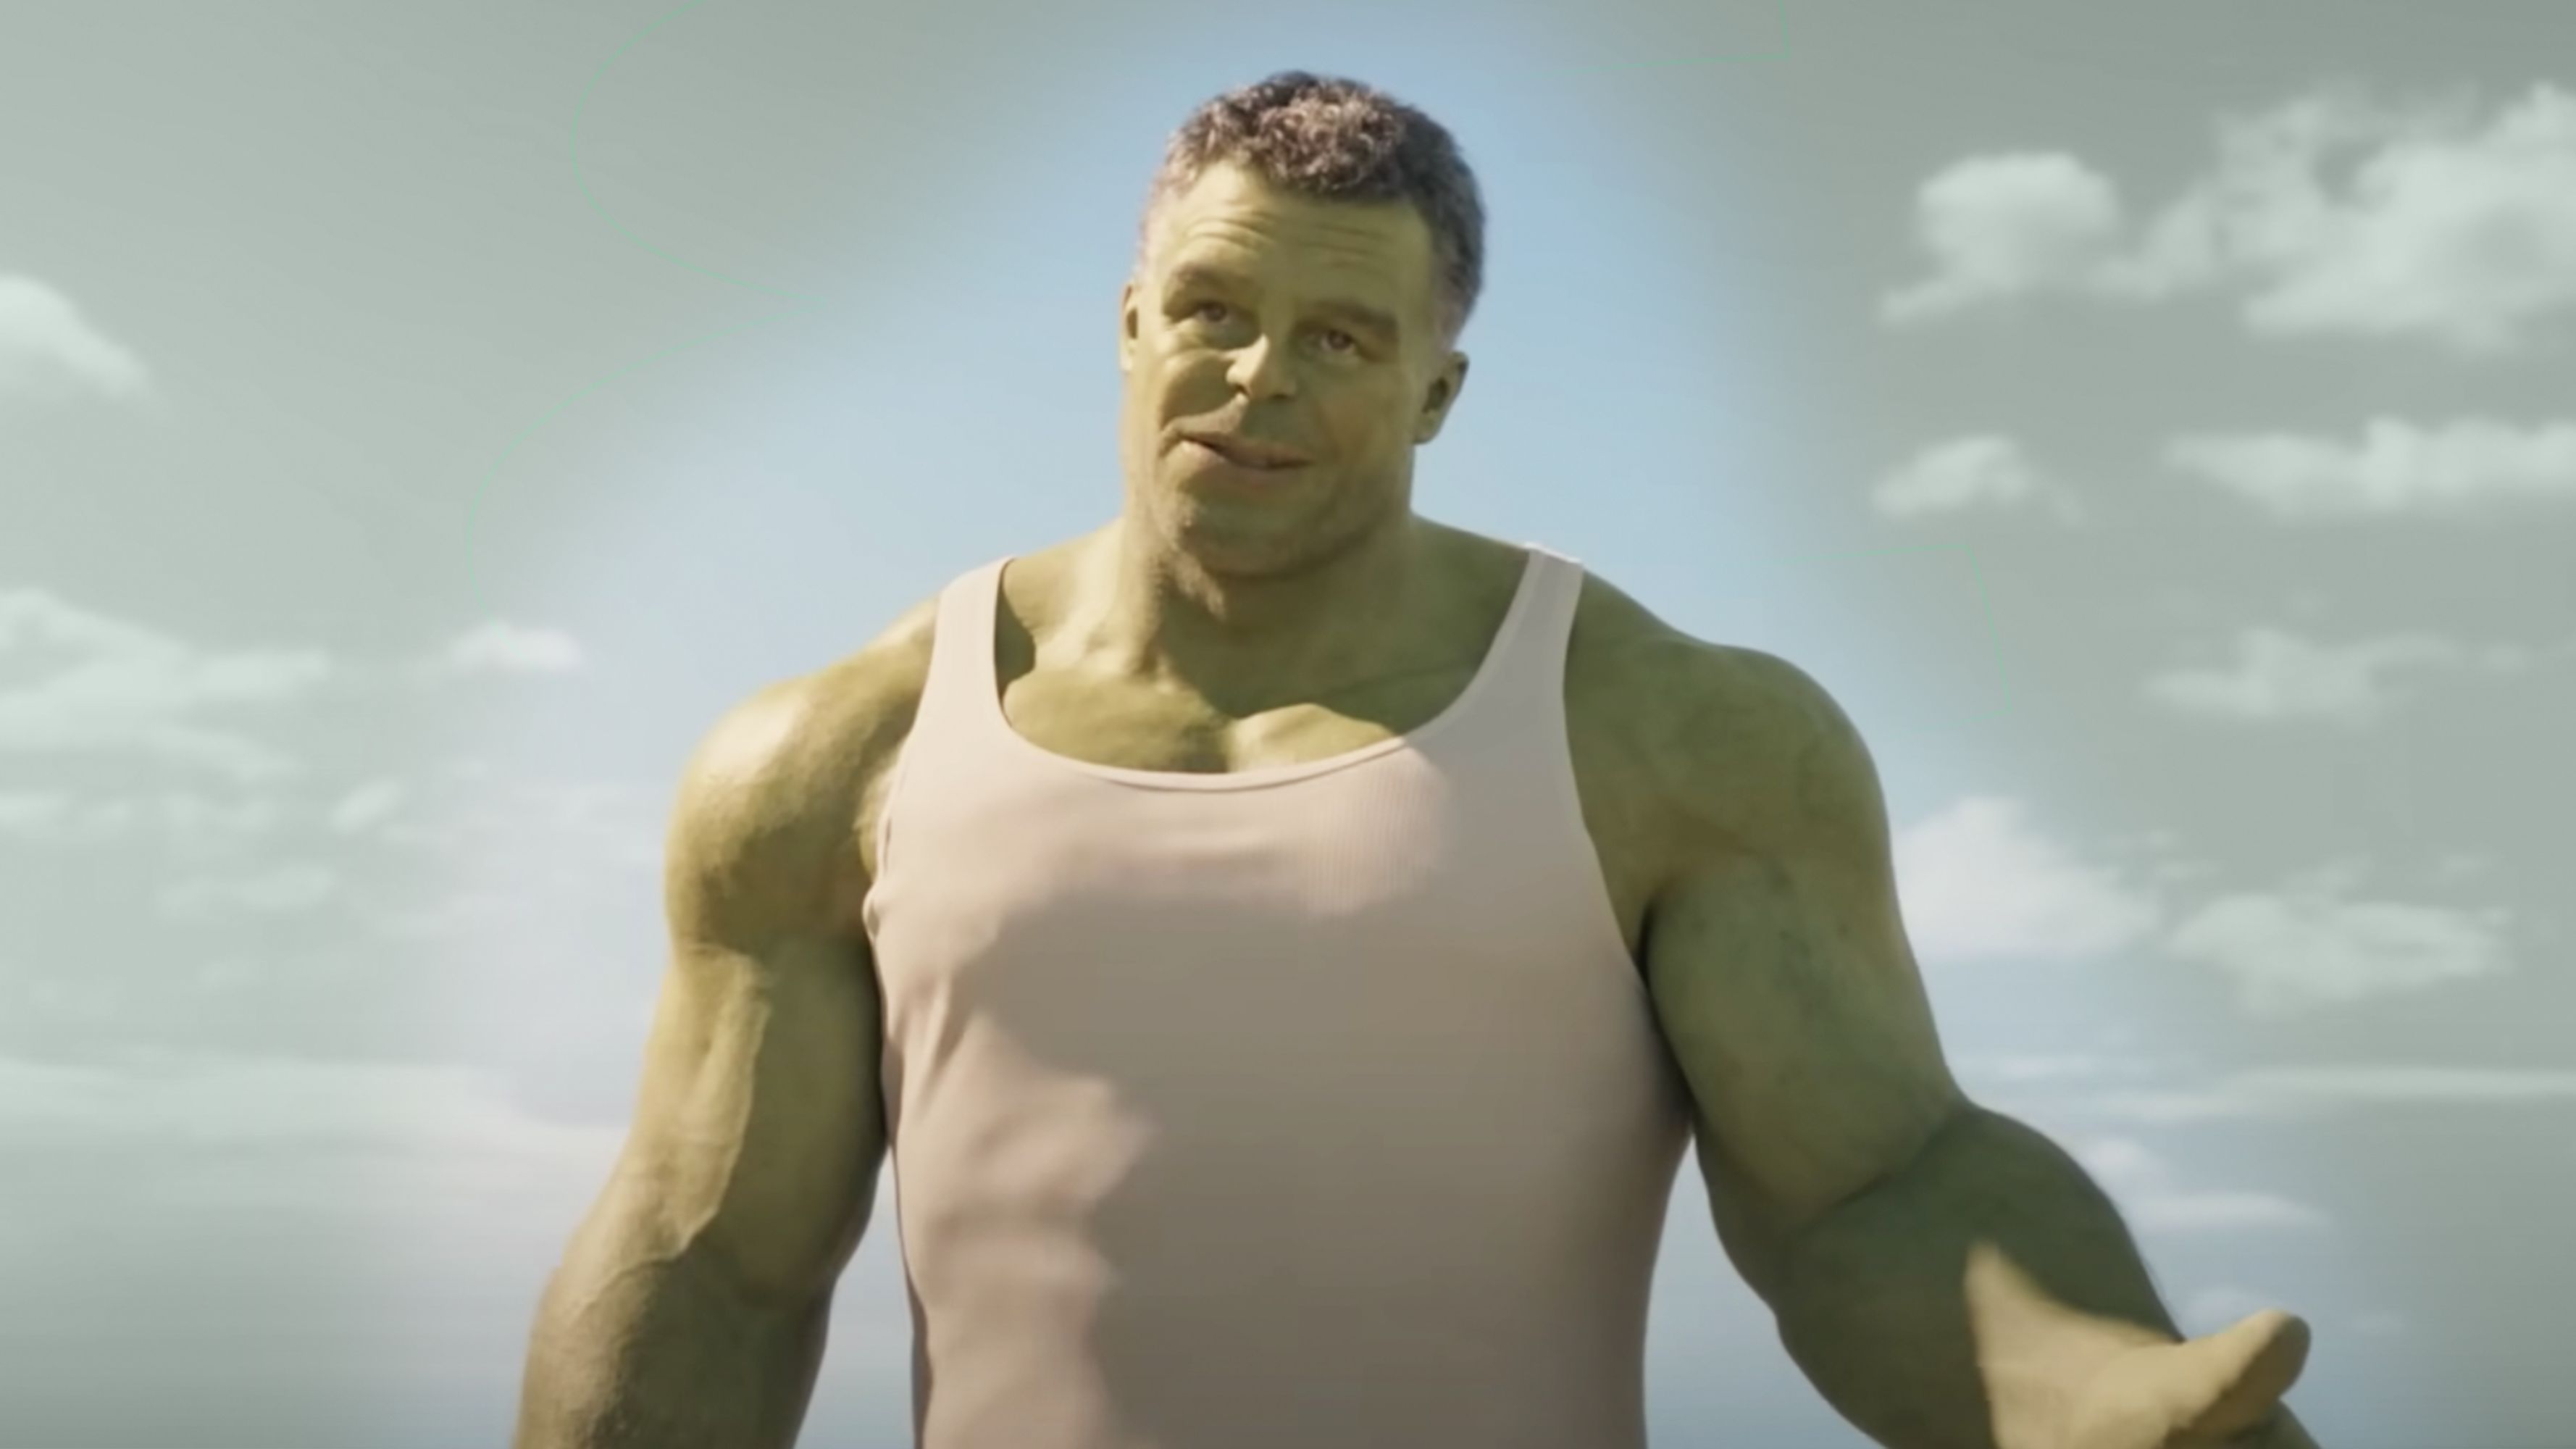 She-Hulk' With Tatiana Maslany Sets Up the Future for Mark